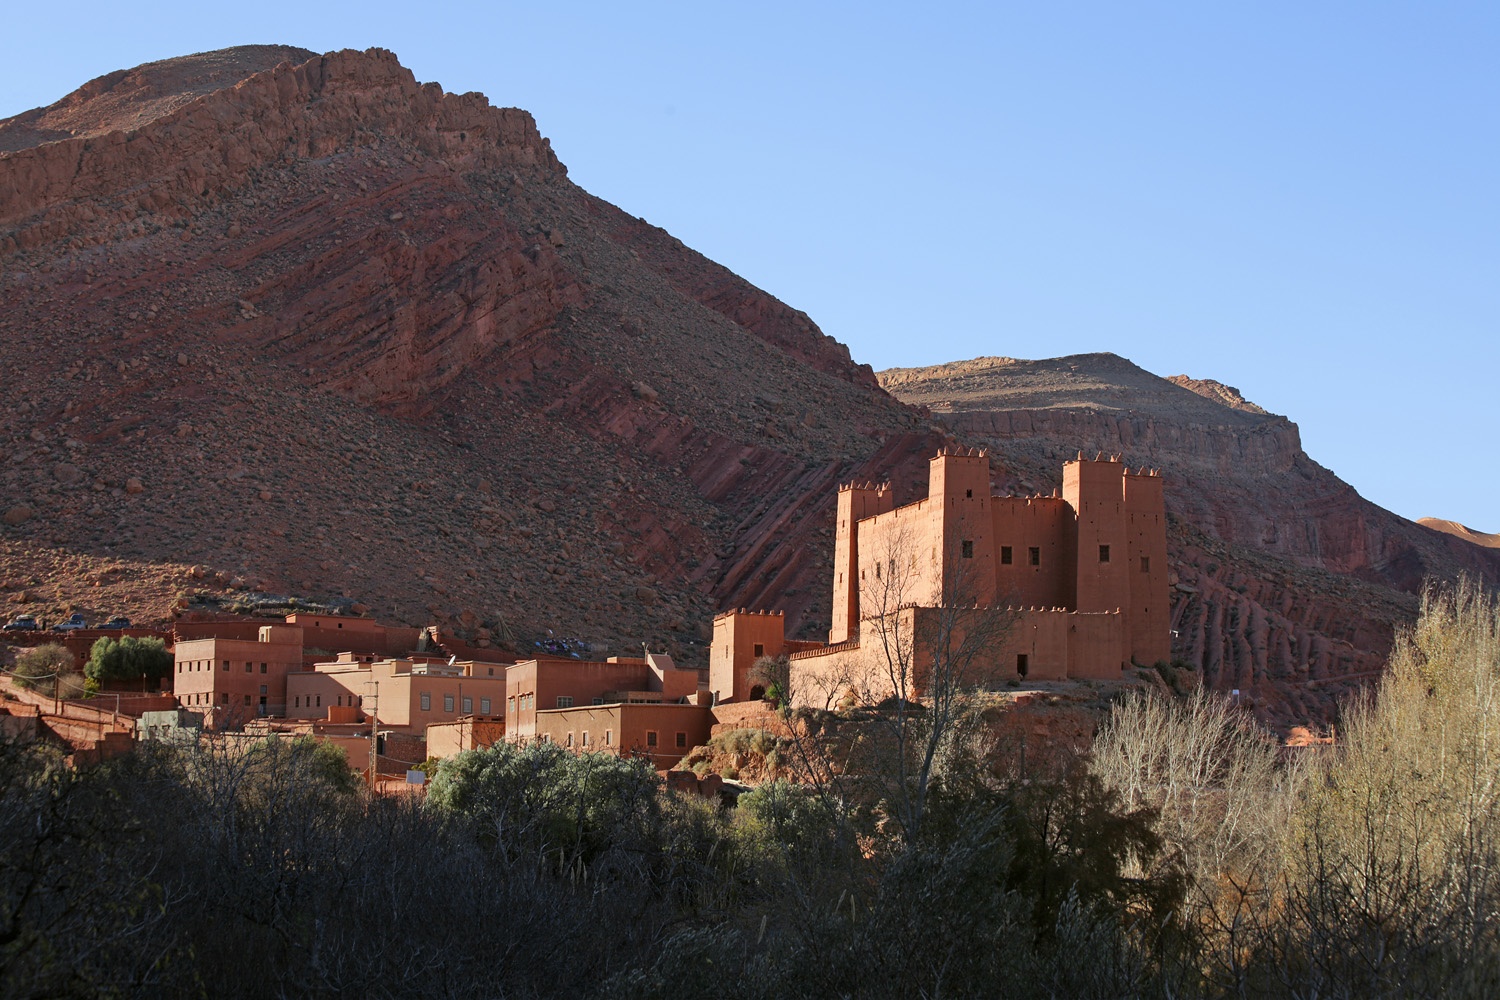 bill-hocker-near-ait-ben-ali-dades-gorge-morocco-2012